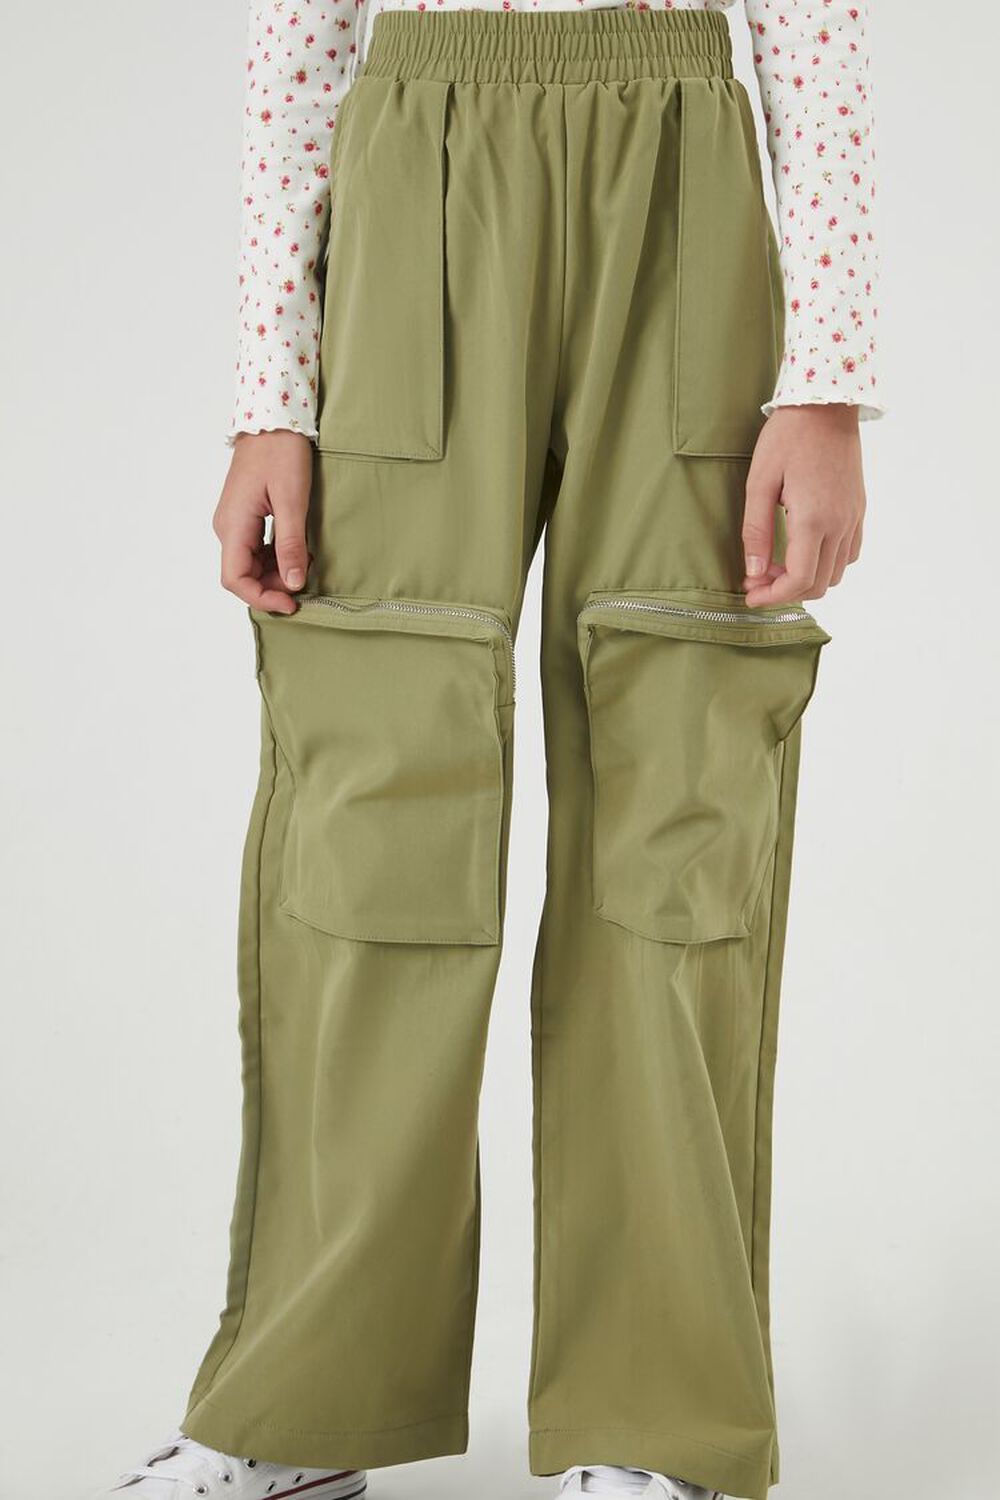 Wide-leg Cargo Pants - Khaki green - Kids